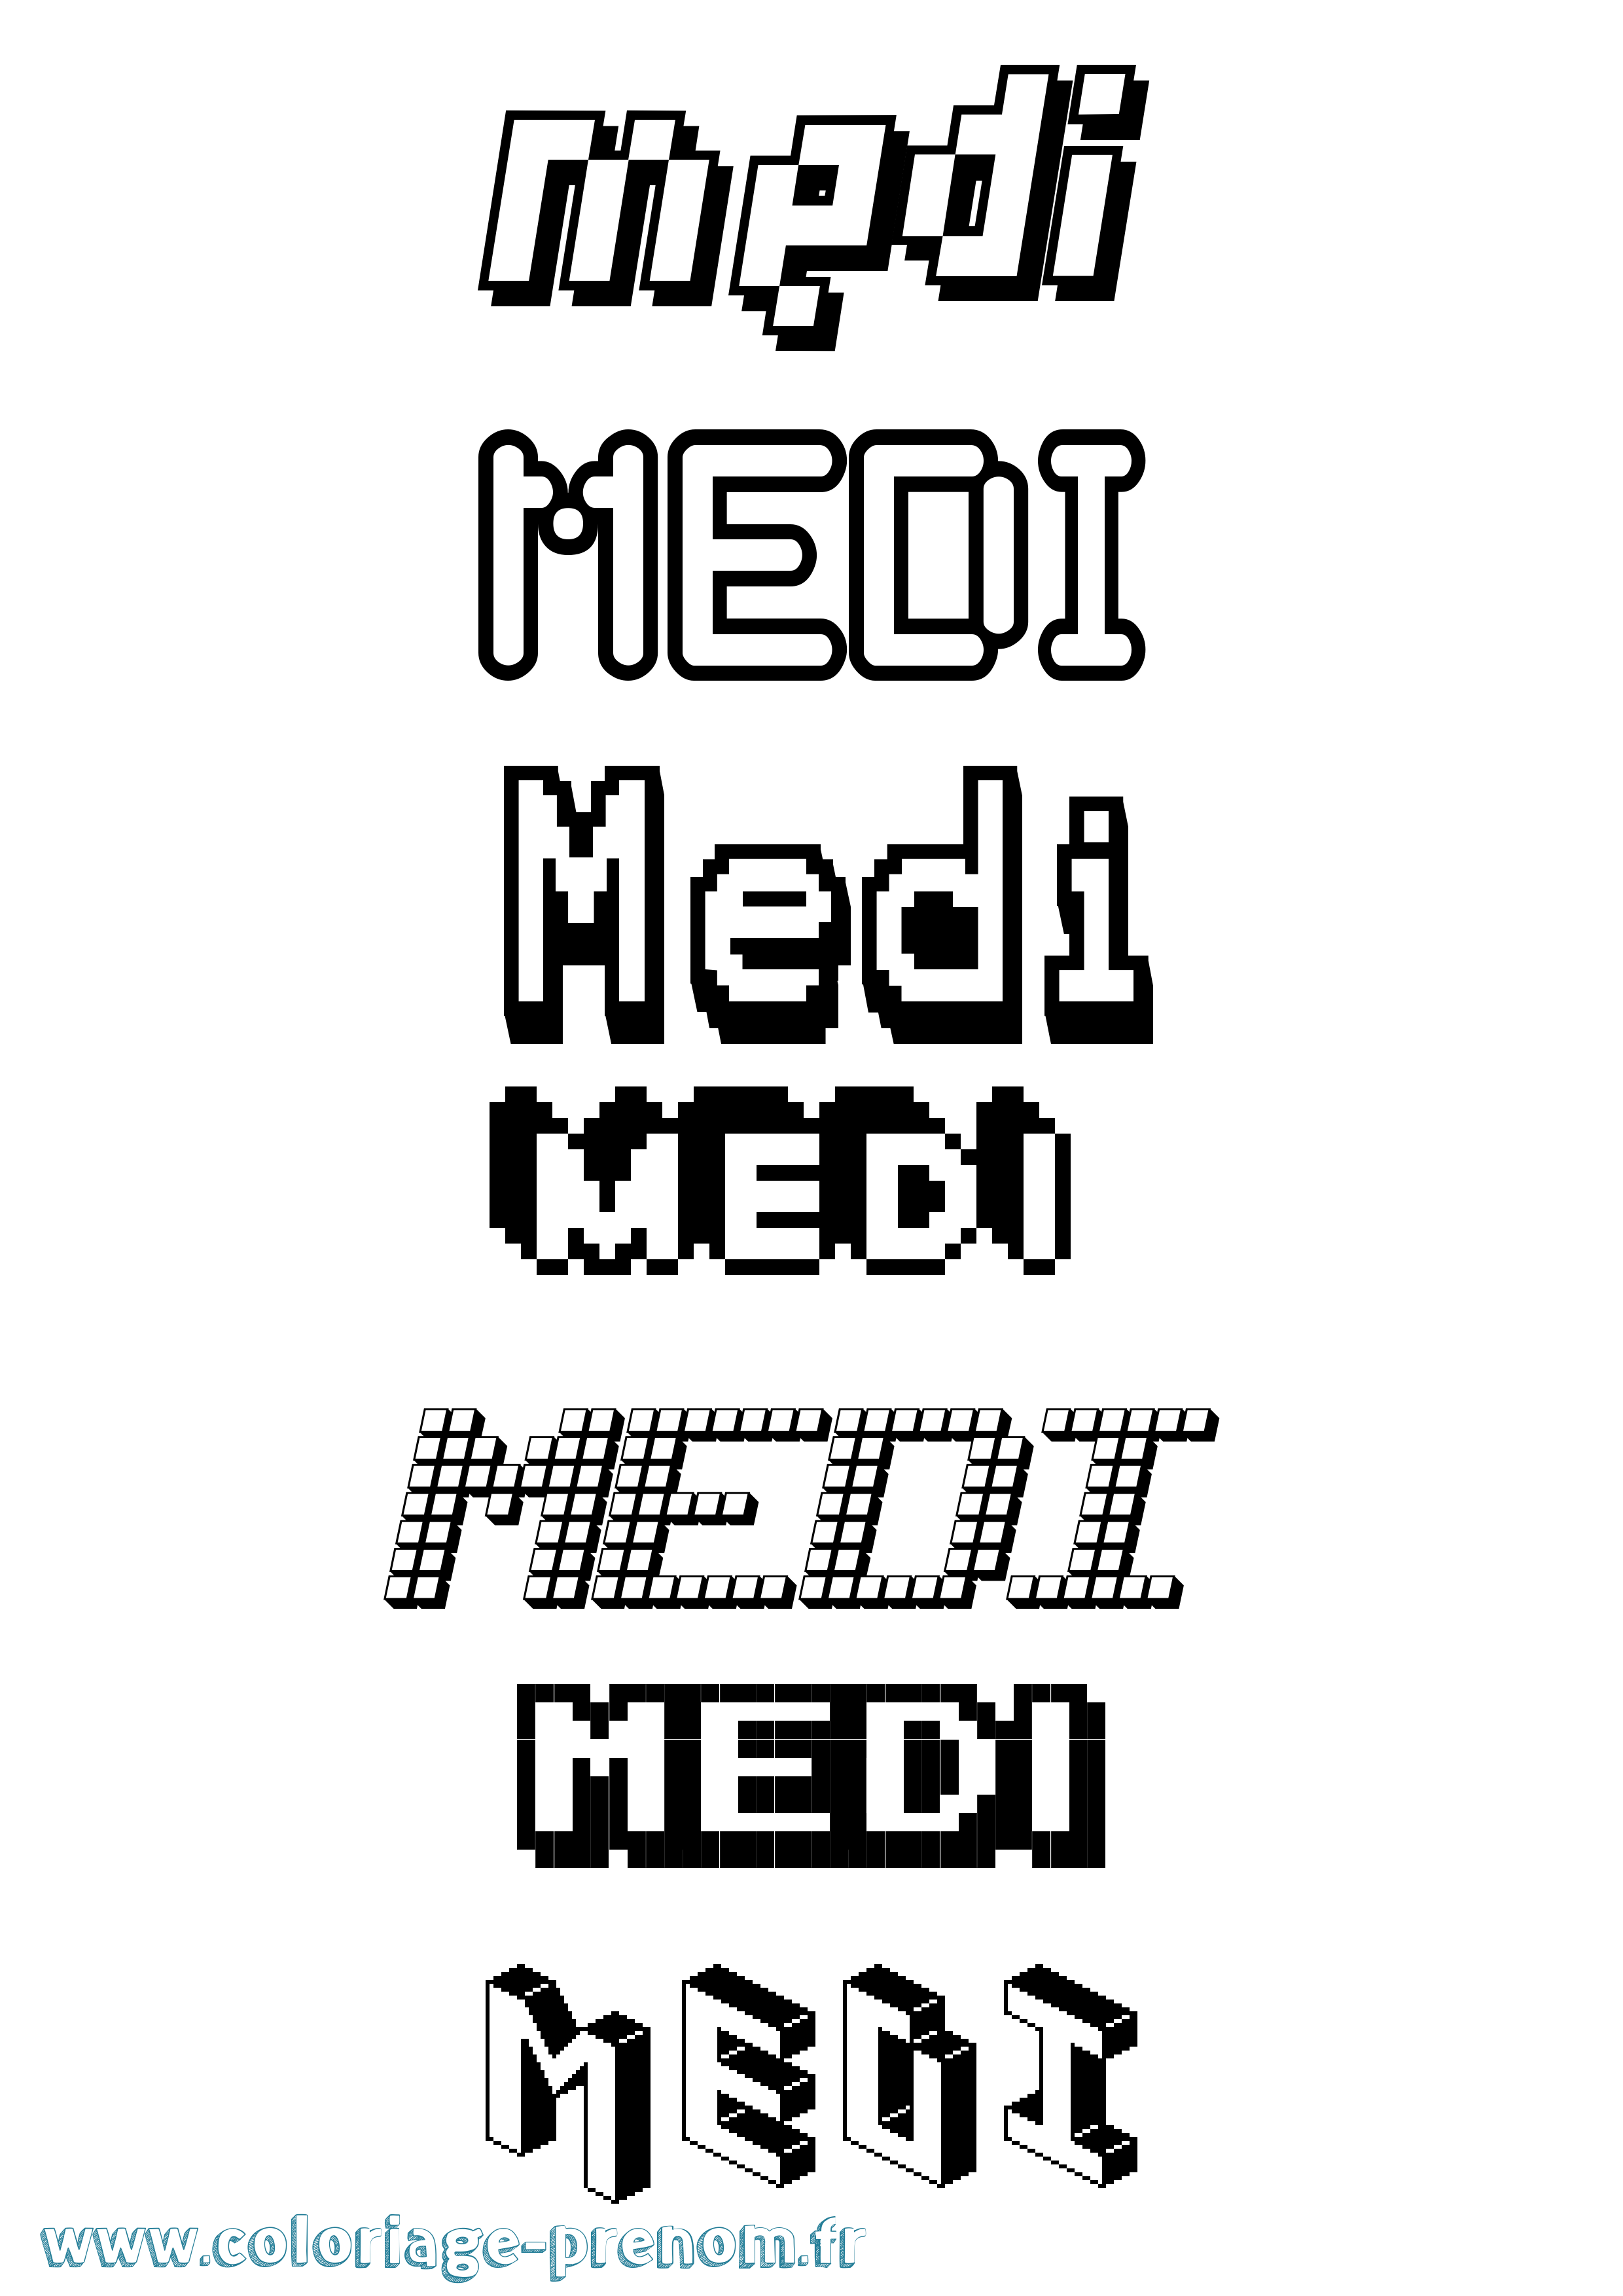 Coloriage prénom Medi Pixel